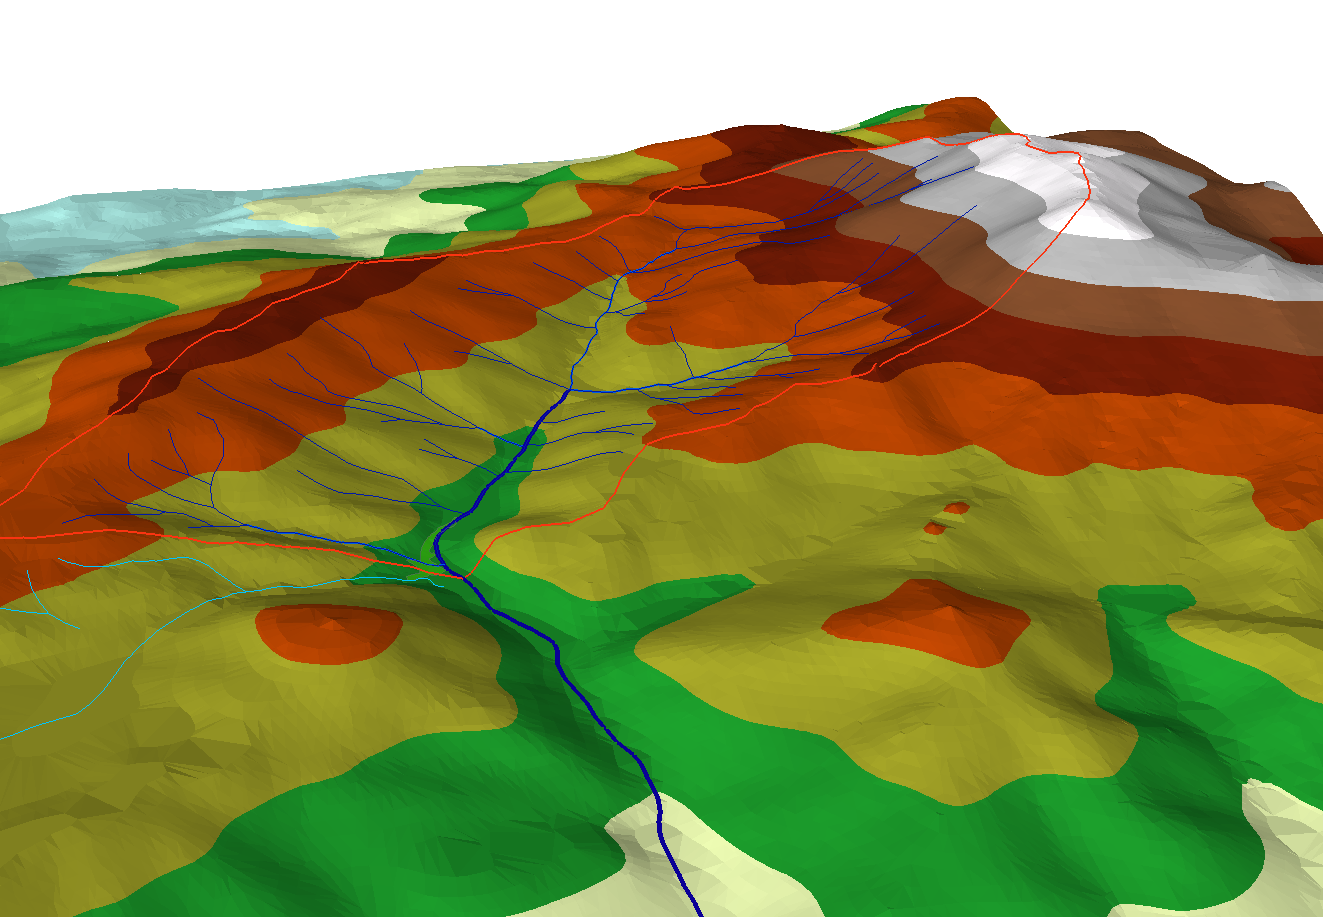 Χάρτες 3d απεικόνισης που απεικονίζουν την υδρολογική λεκάνη και το υδατόρεμα οριοθέτησης.